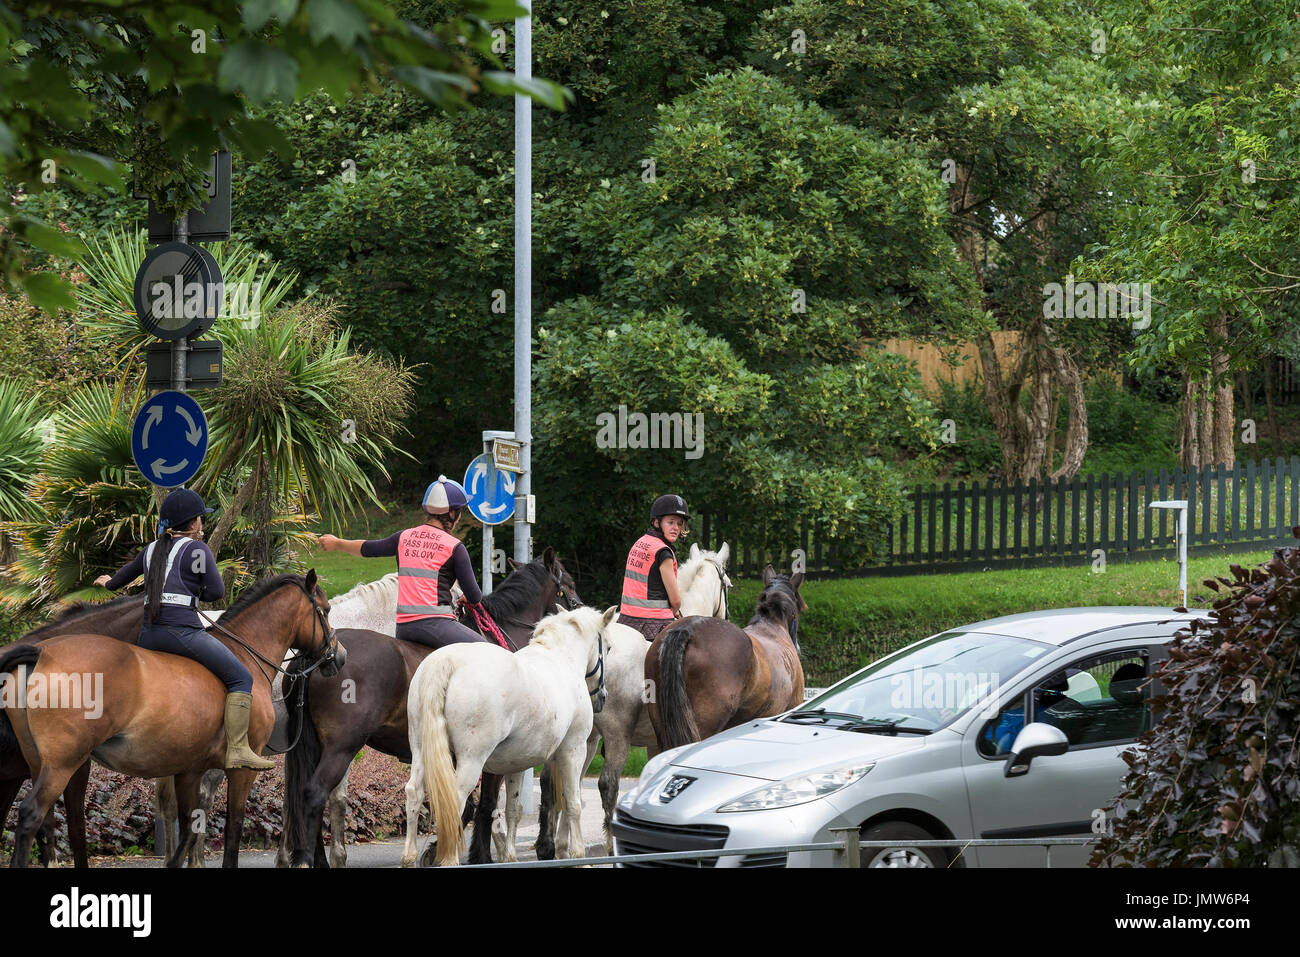 Los jinetes a caballo en carreteras públicas. Foto de stock